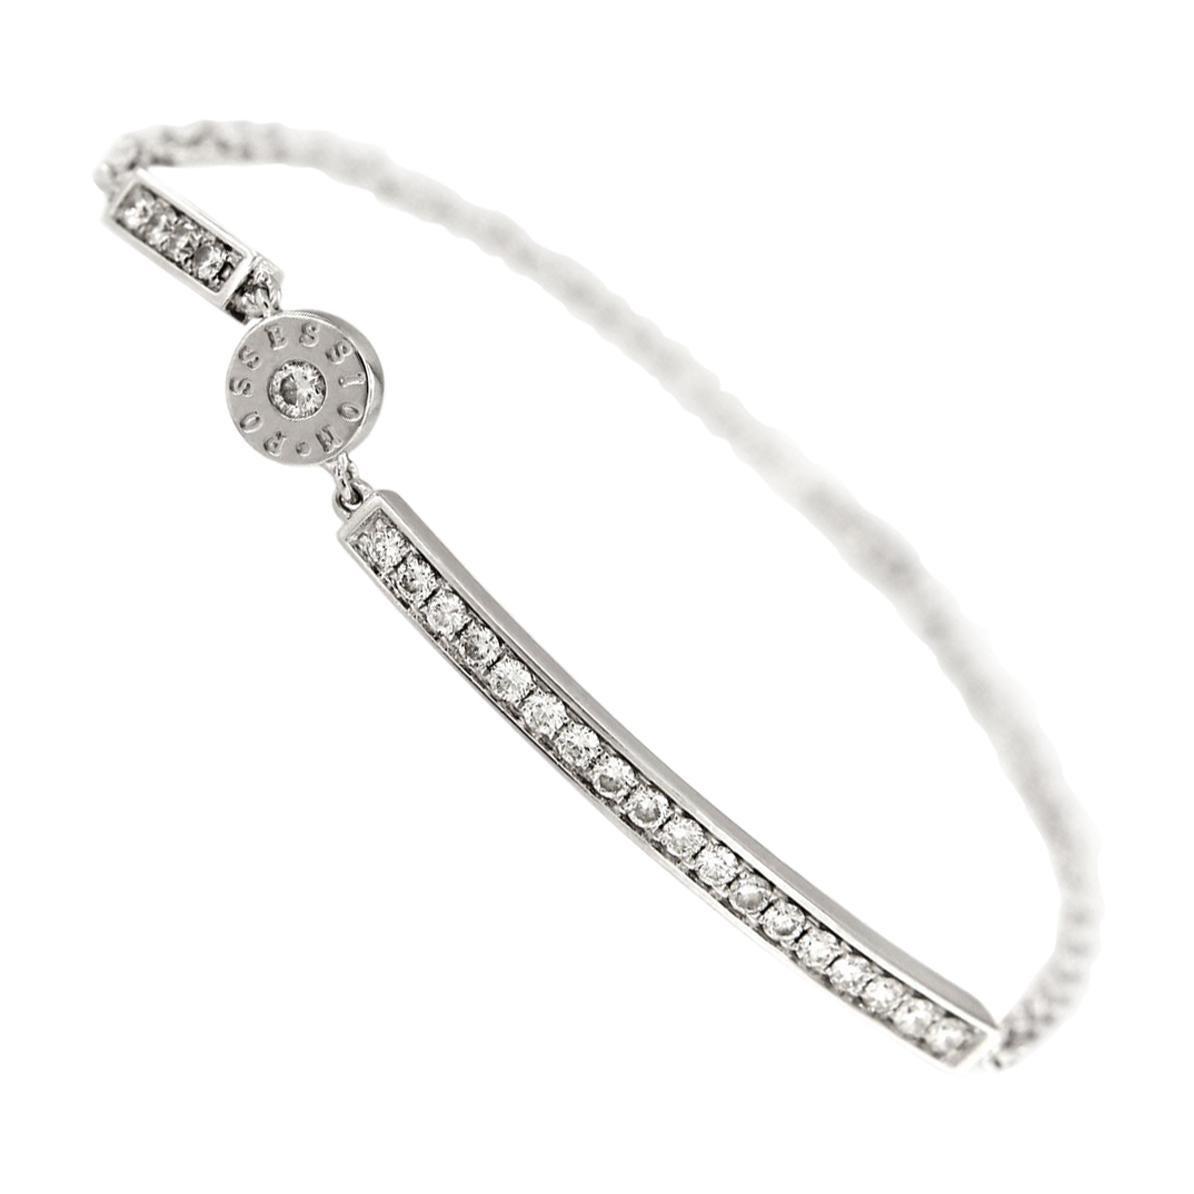 Piaget Possession Diamond Bracelet in 18 Karat White Gold